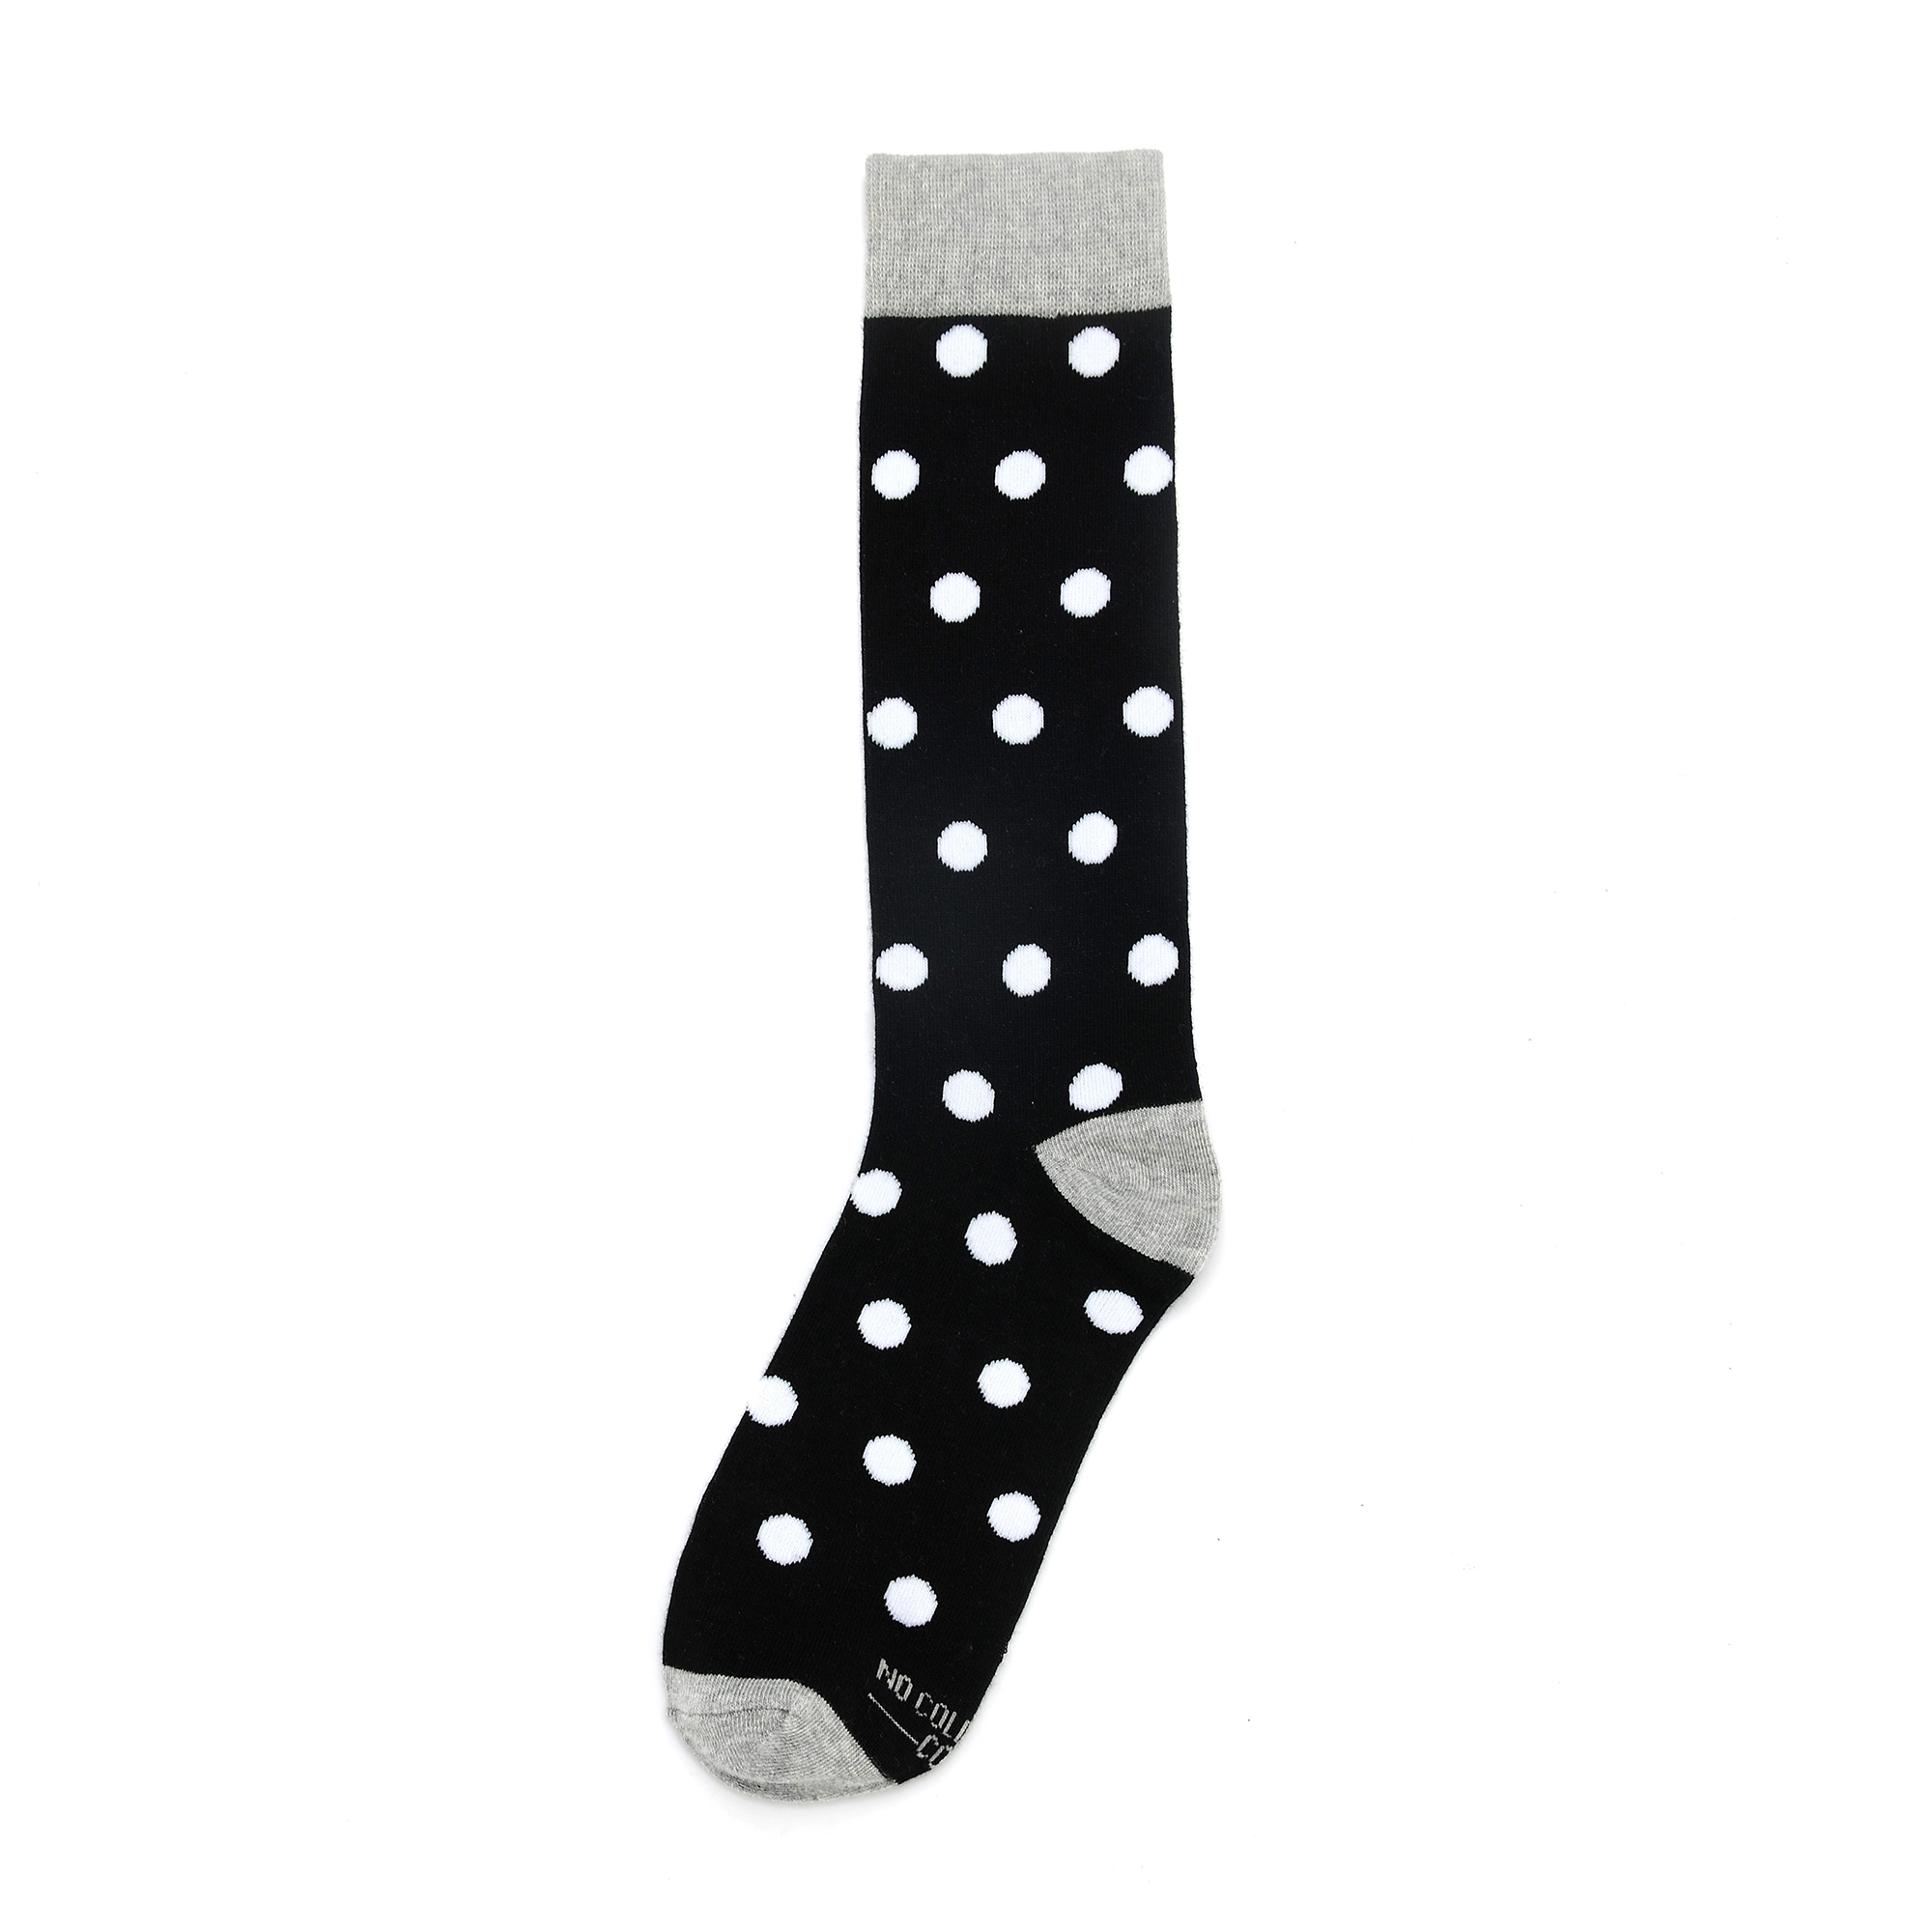 Black Socks with White Polka Dot Socks